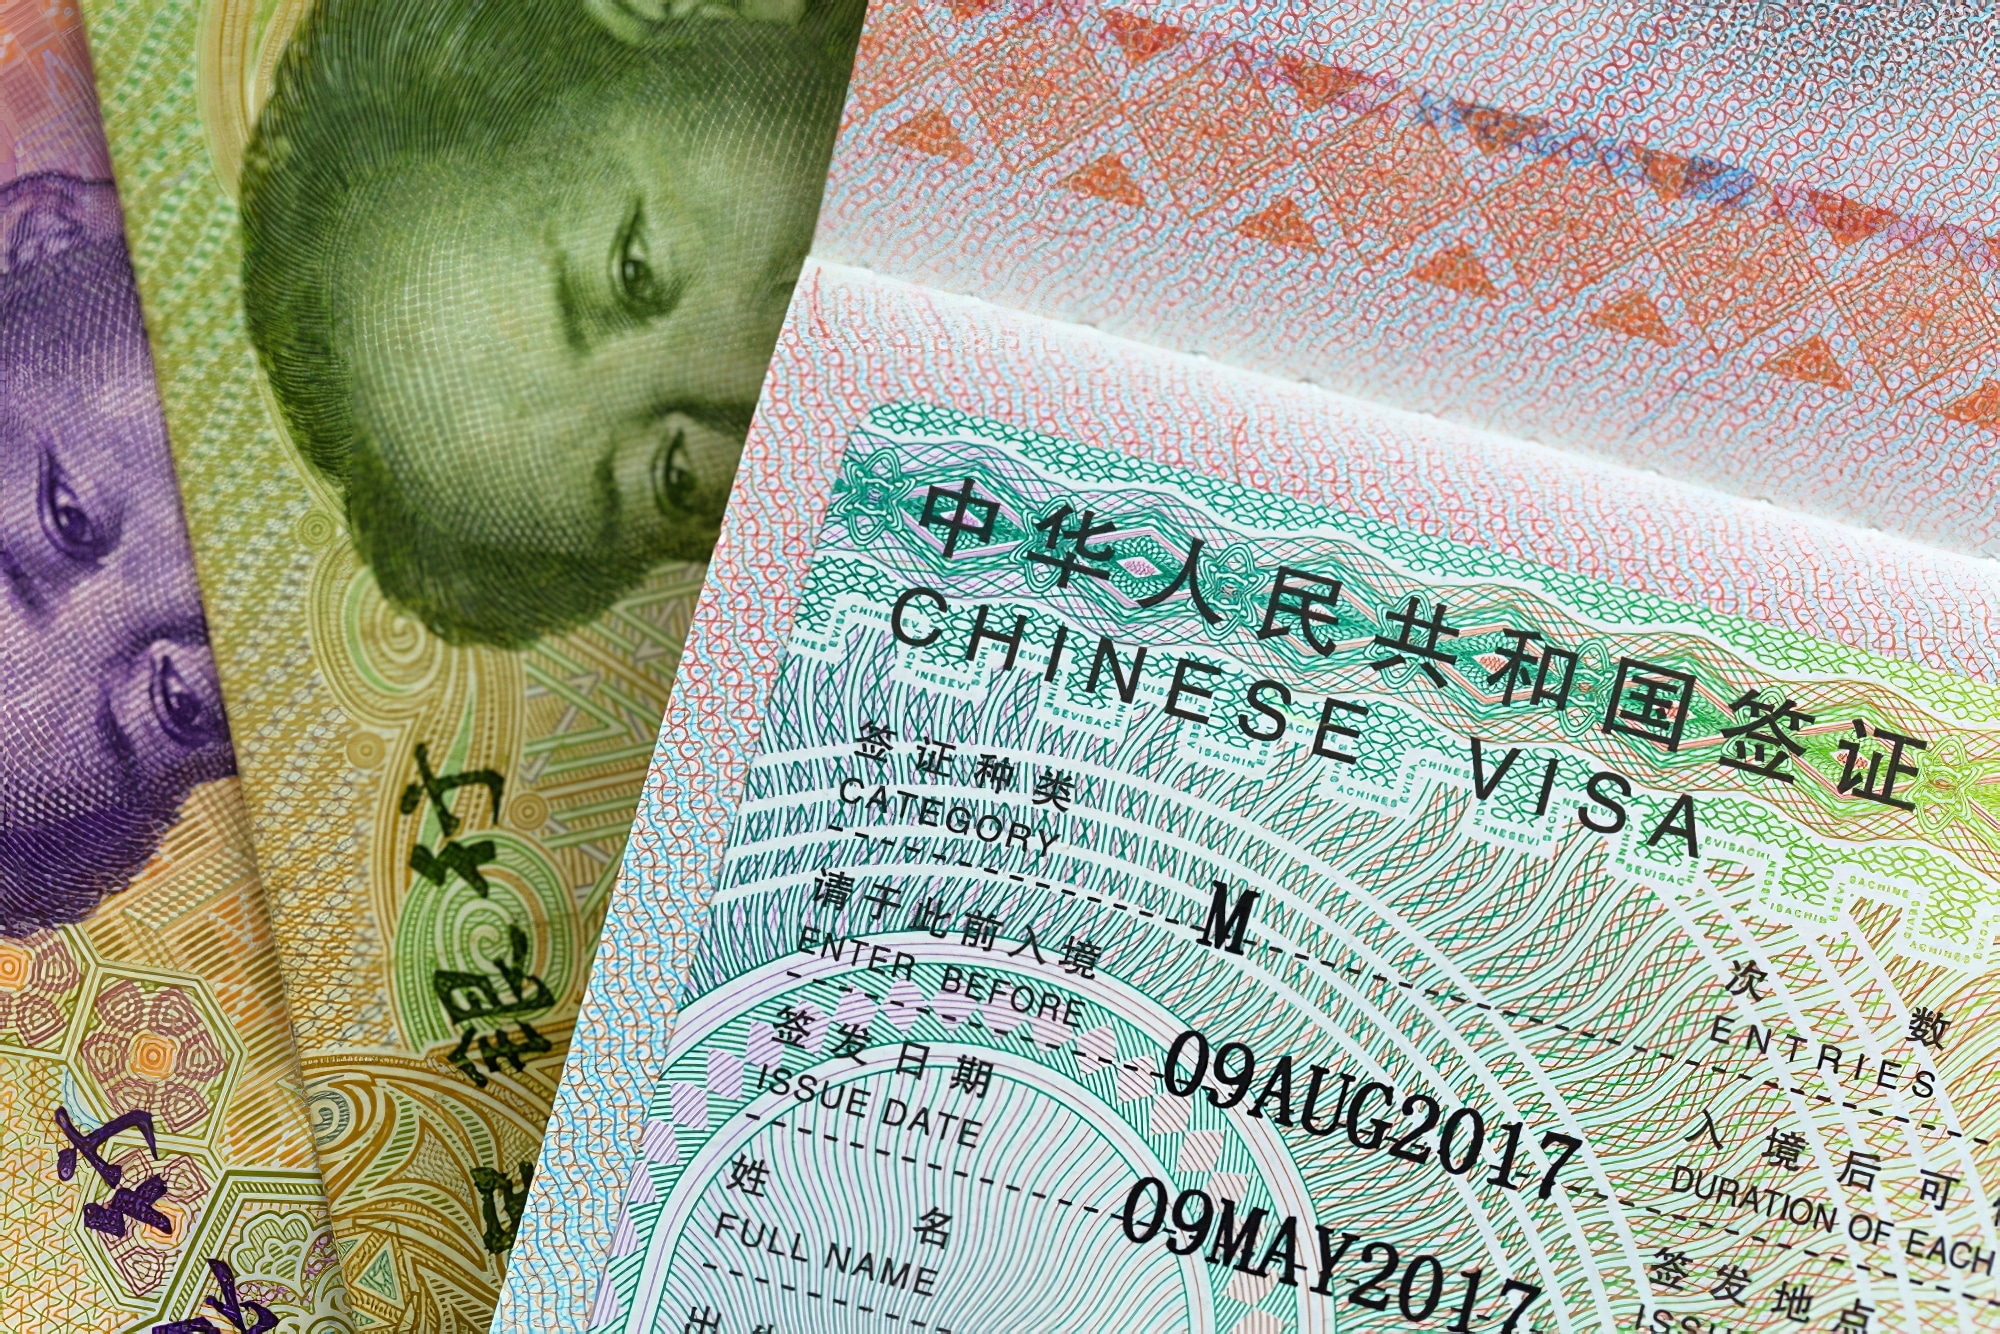 Obtenir un Visa pour la Chine